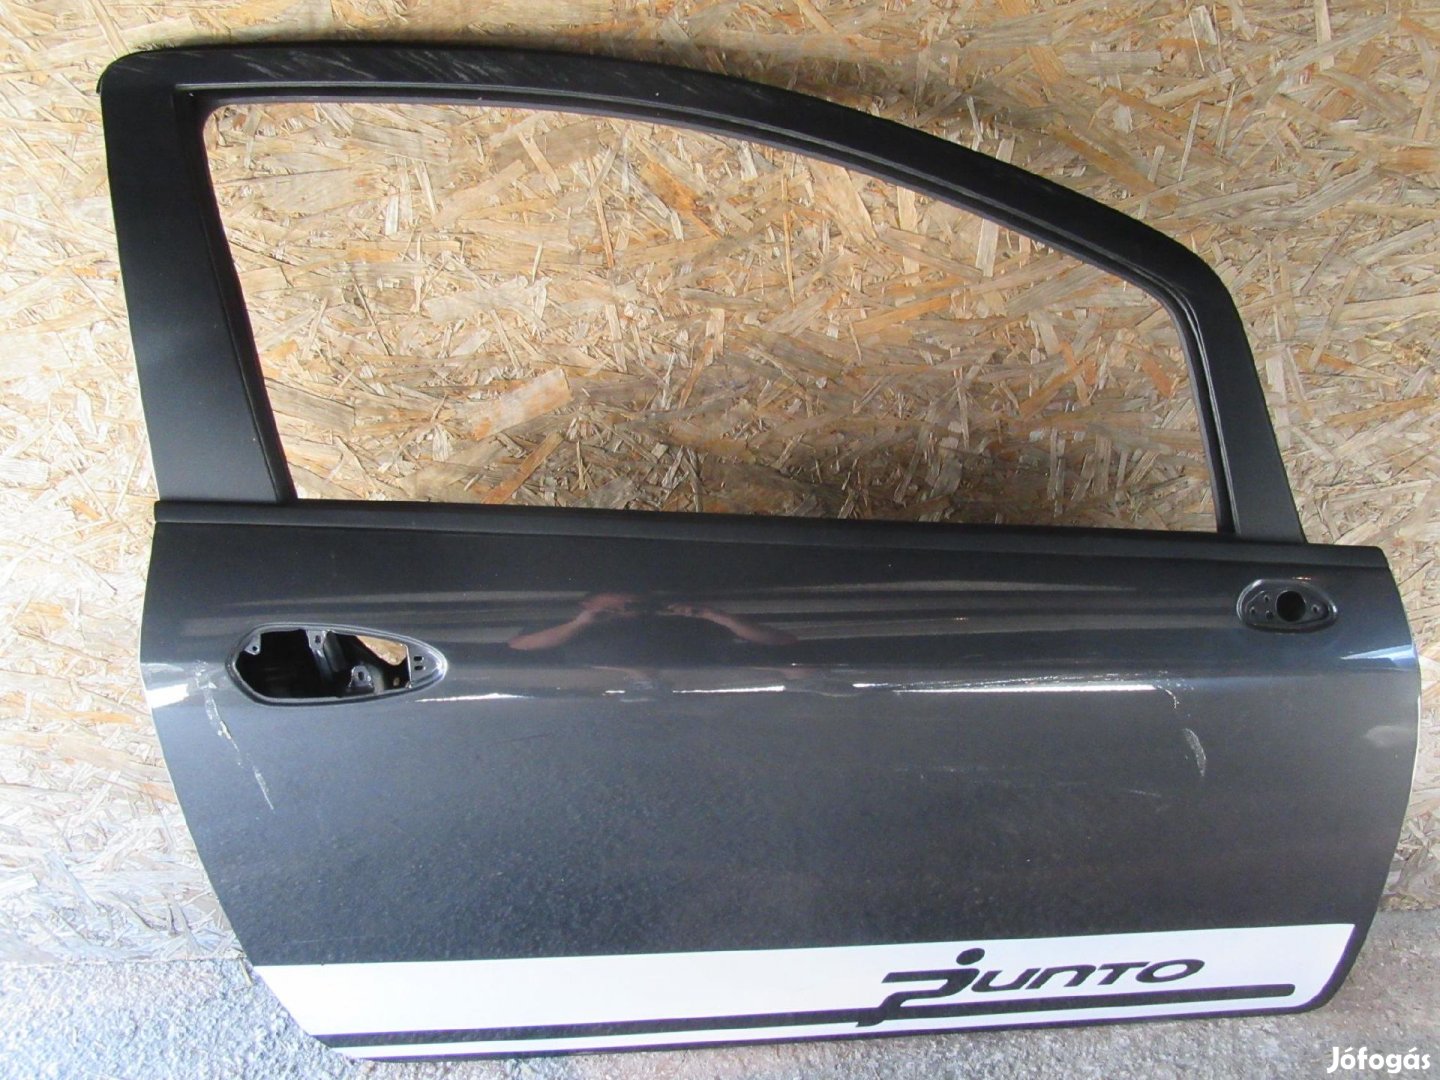 Ajtó18902 Fiat Grande Punto 3 ajtós, sötét szürke színű,jobb oldali